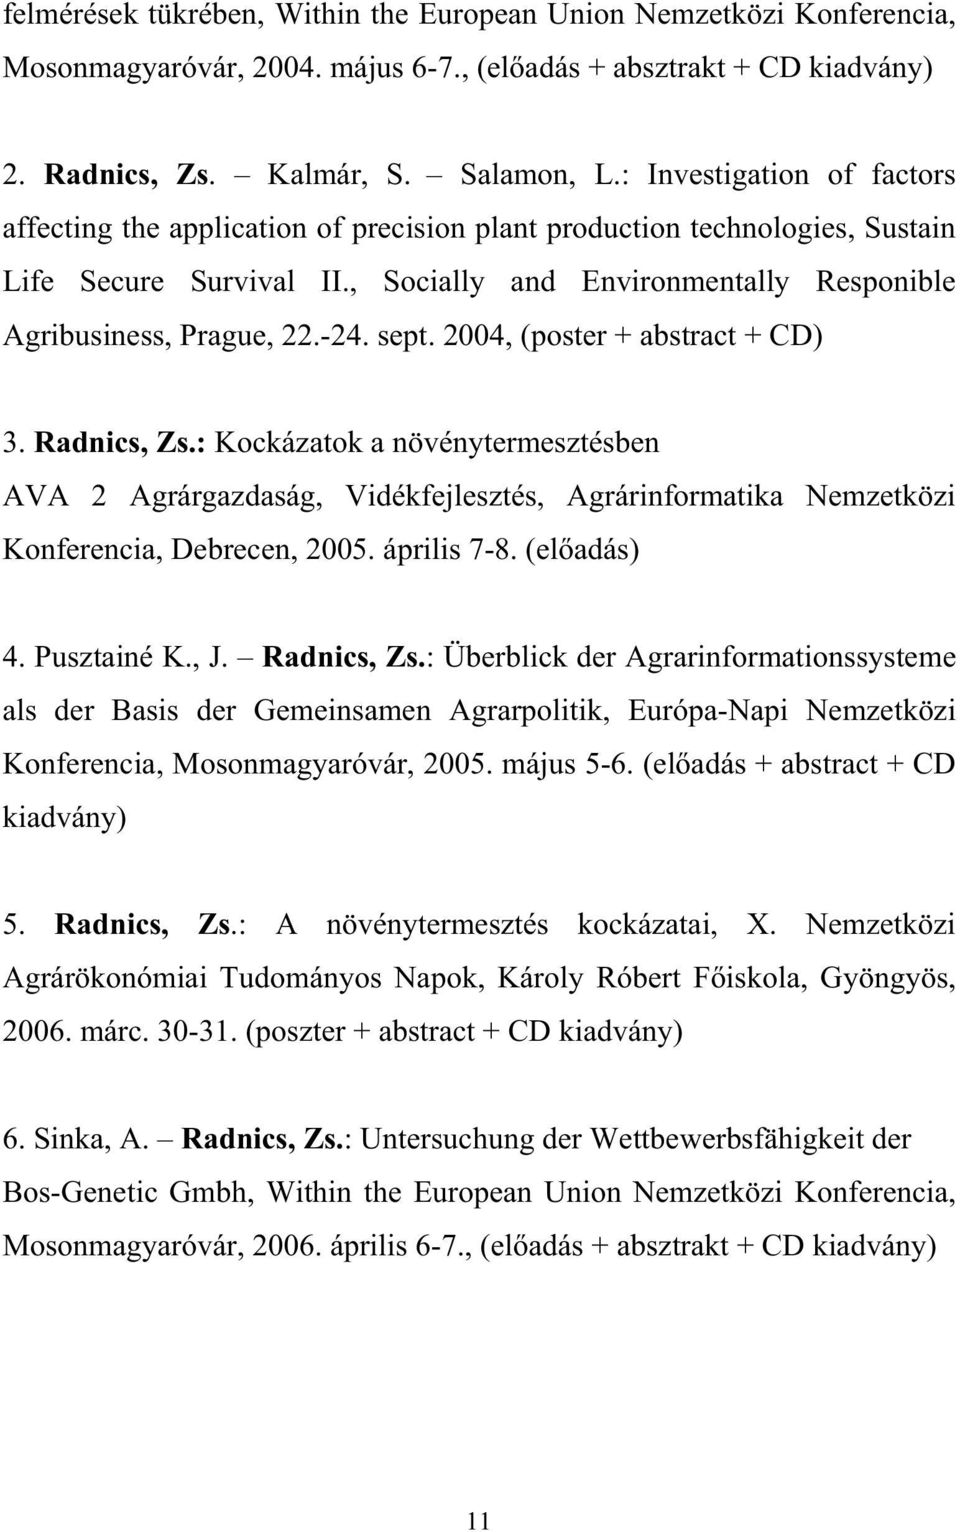 sept. 2004, (poster + abstract + CD) 3. Radnics, Zs.: Kockázatok a növénytermesztésben AVA 2 Agrárgazdaság, Vidékfejlesztés, Agrárinformatika Nemzetközi Konferencia, Debrecen, 2005. április 7-8.